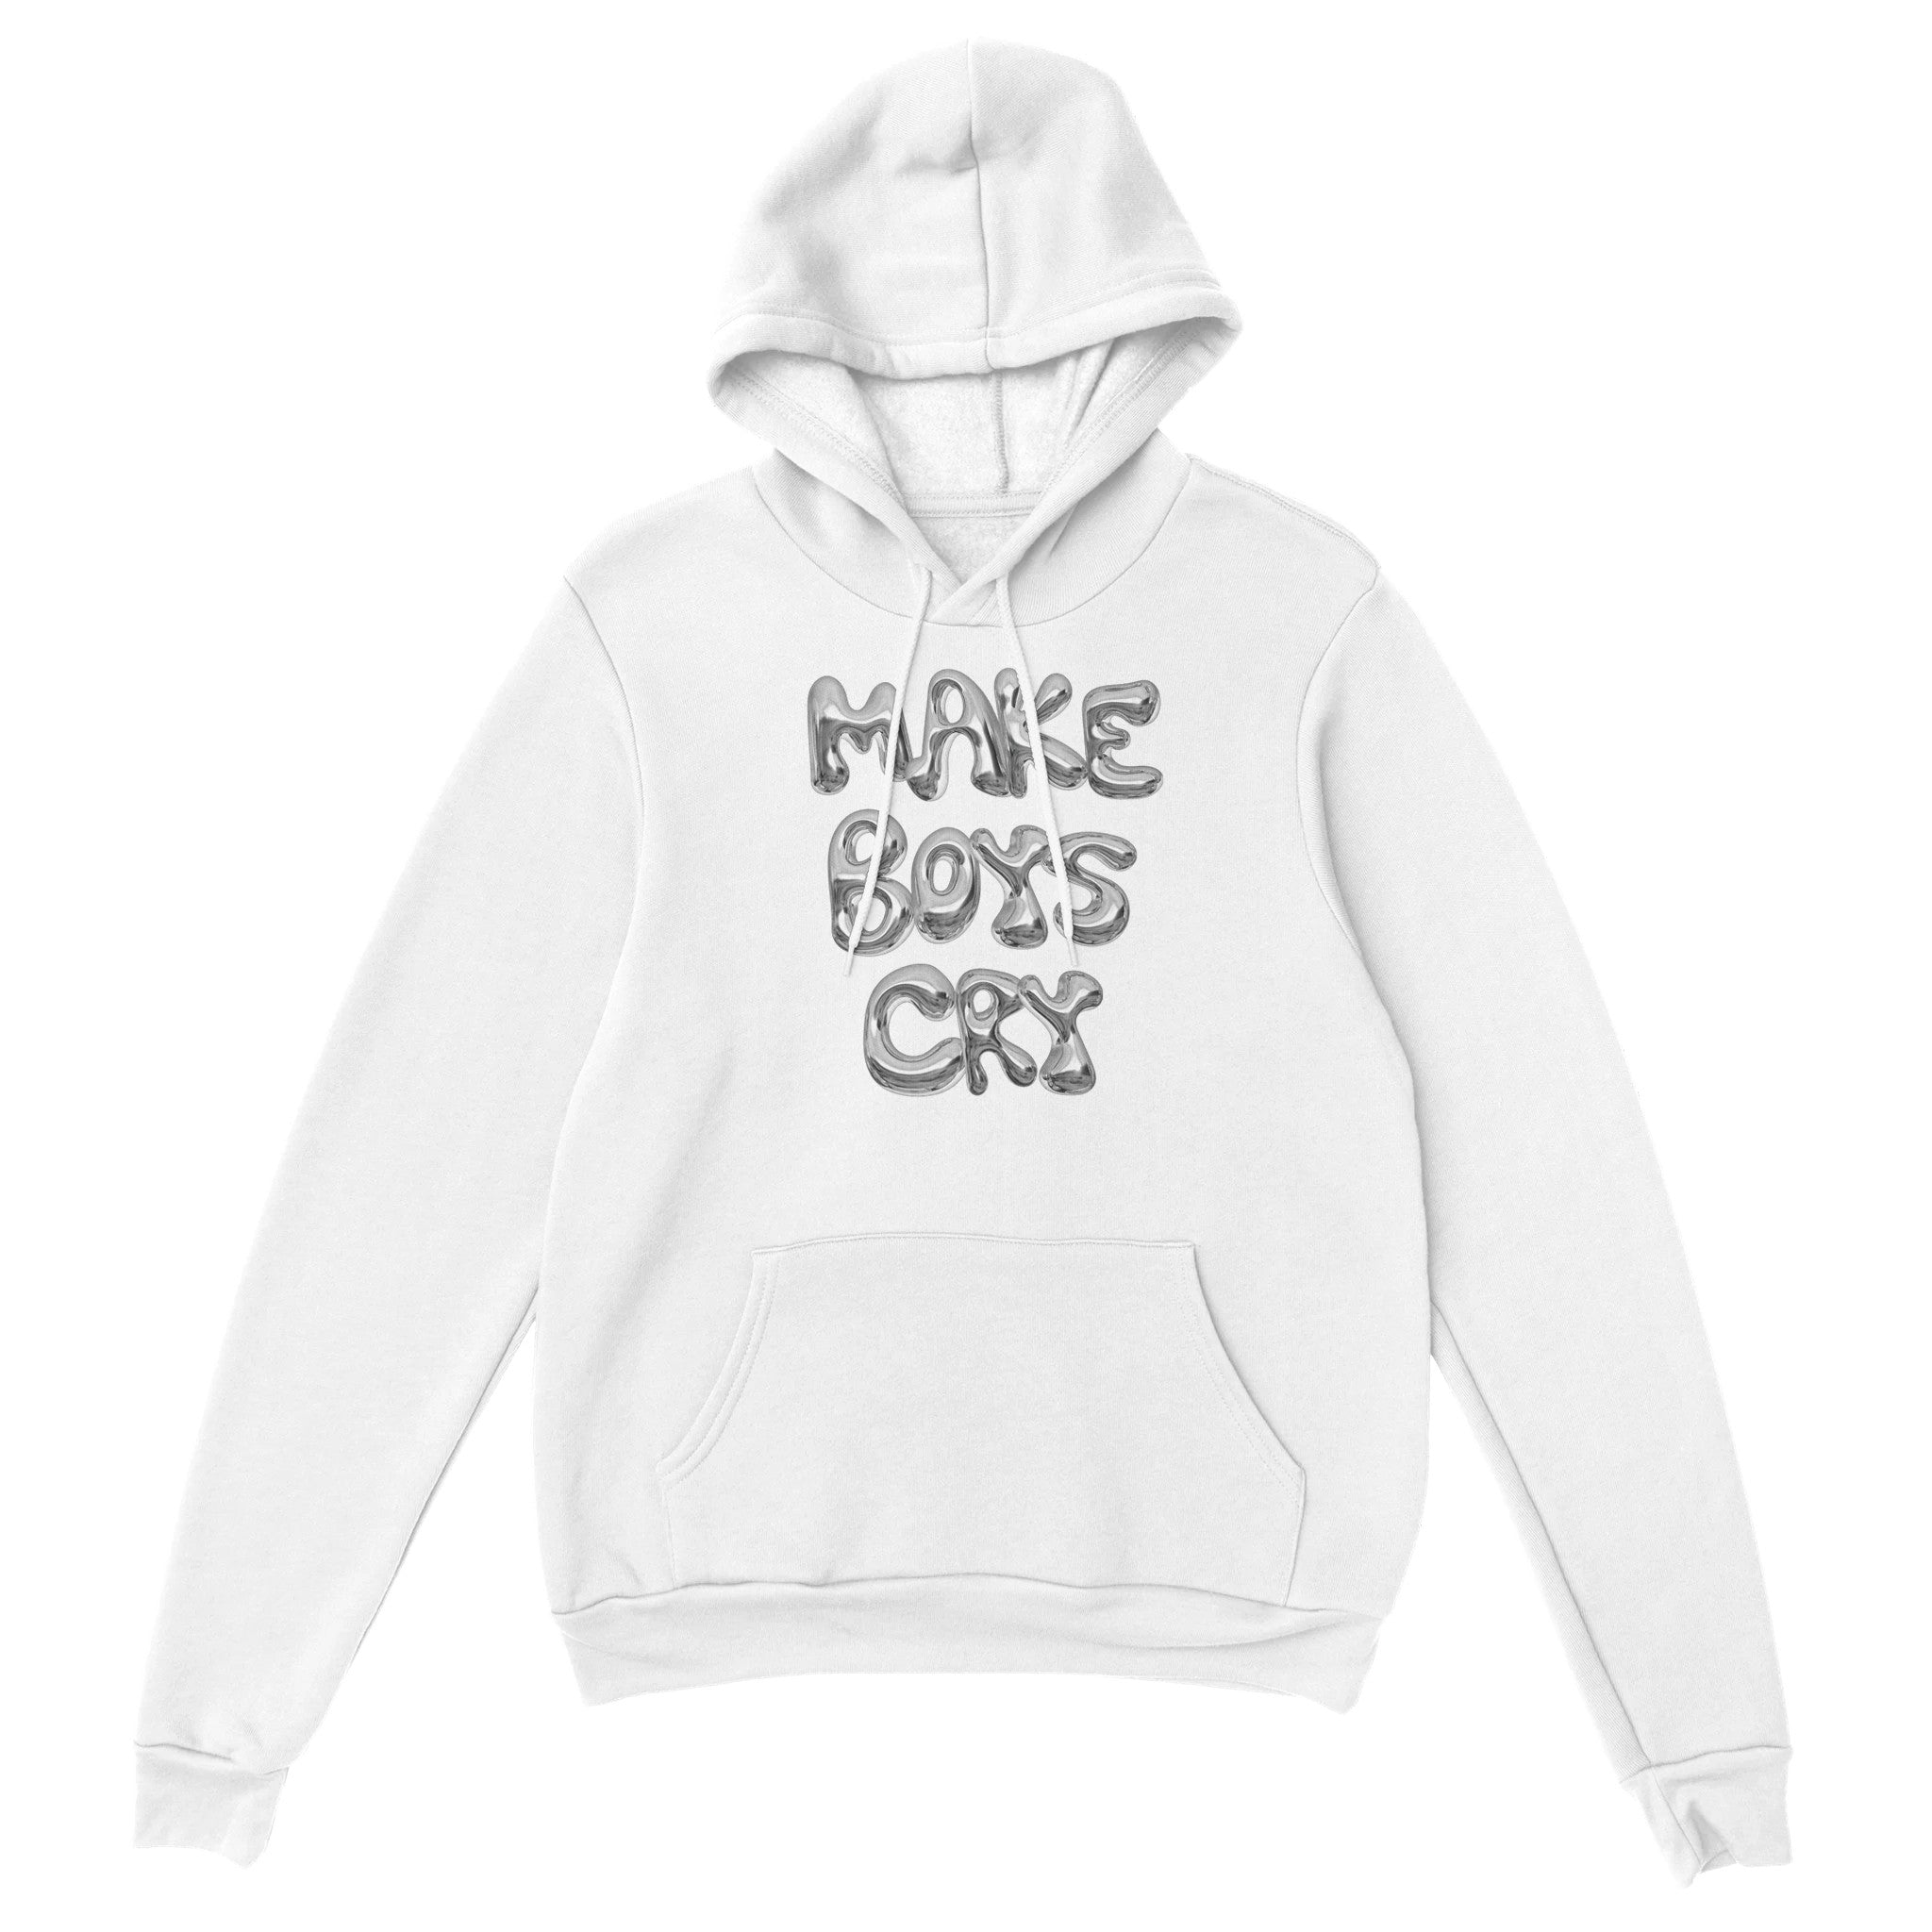 'Make Boys Cry' hoodie - In Print We Trust